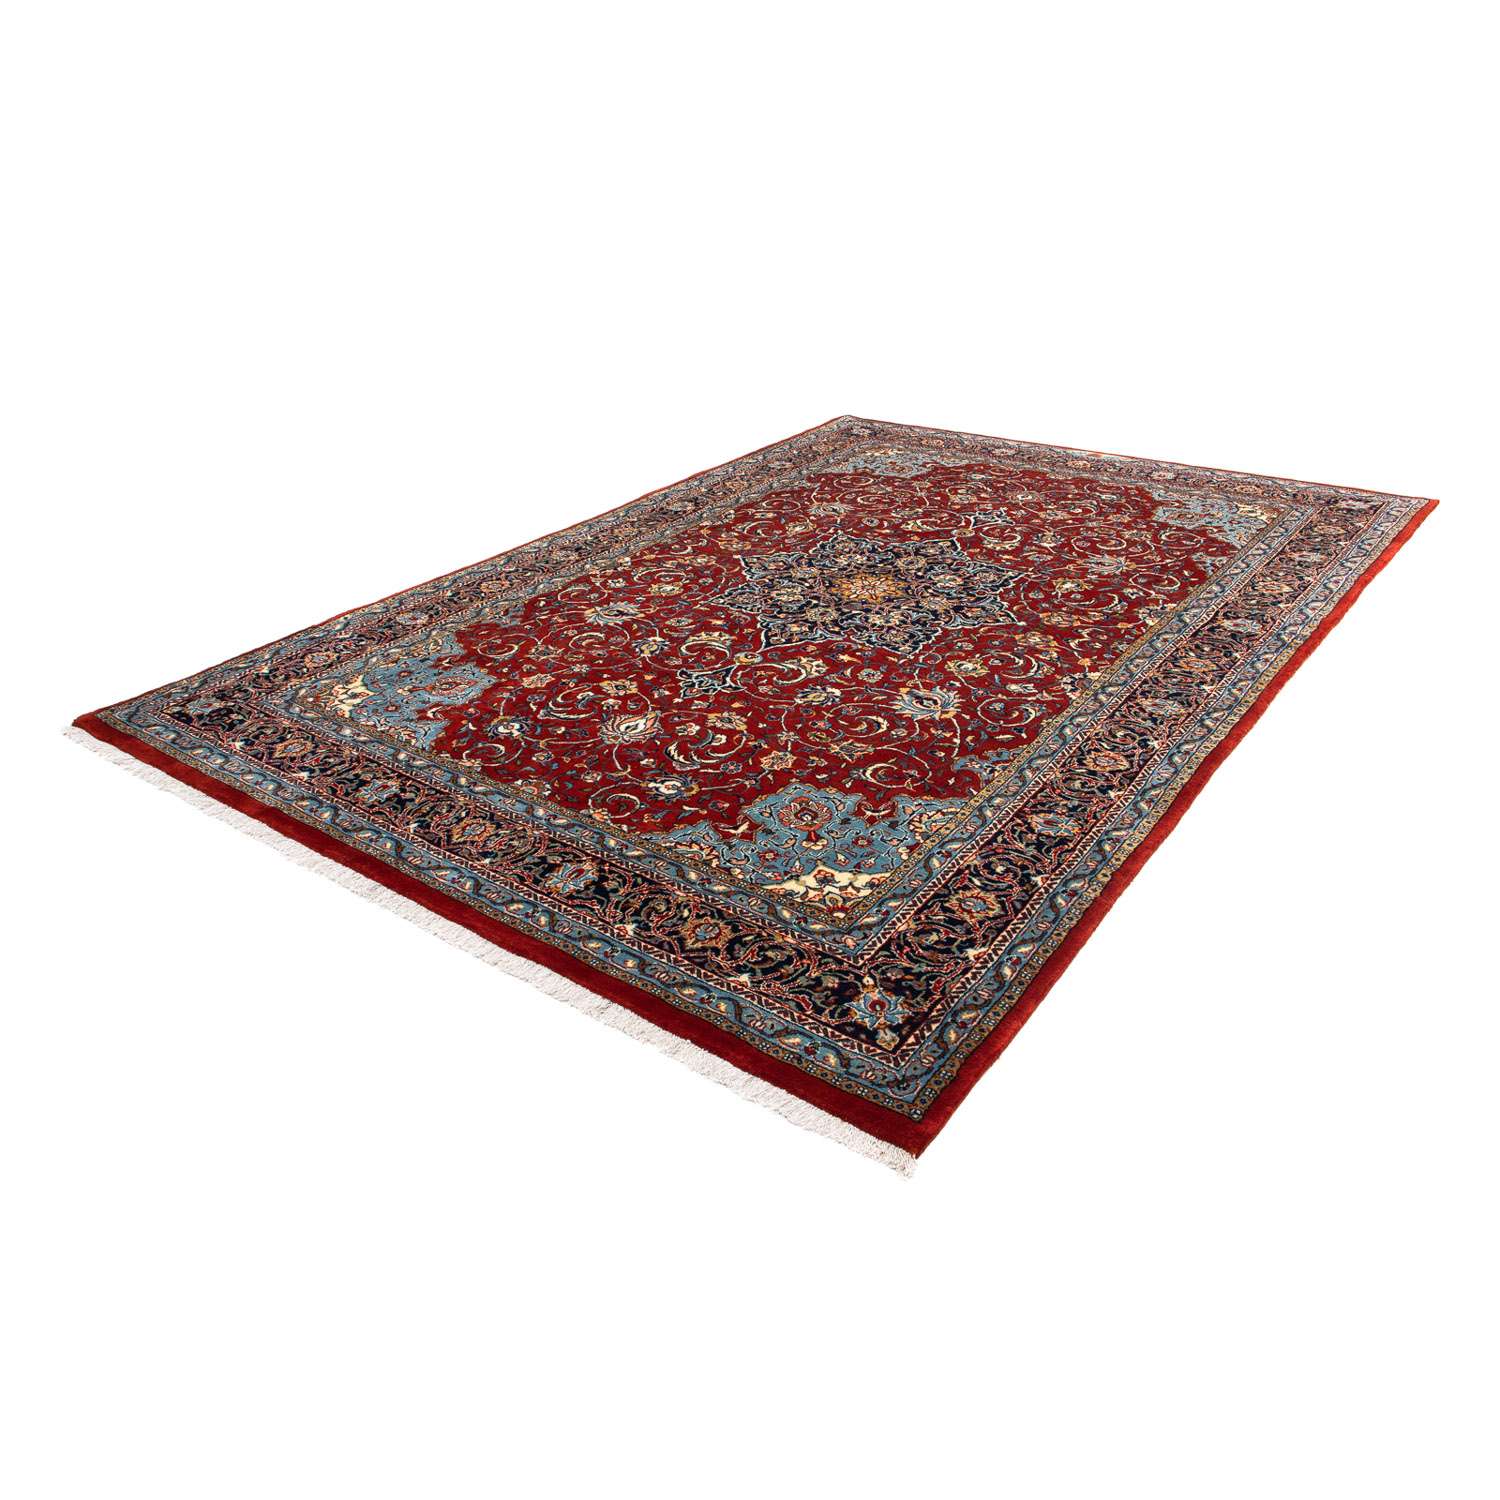 Tapis persan - Royal - 312 x 214 cm - rouge foncé